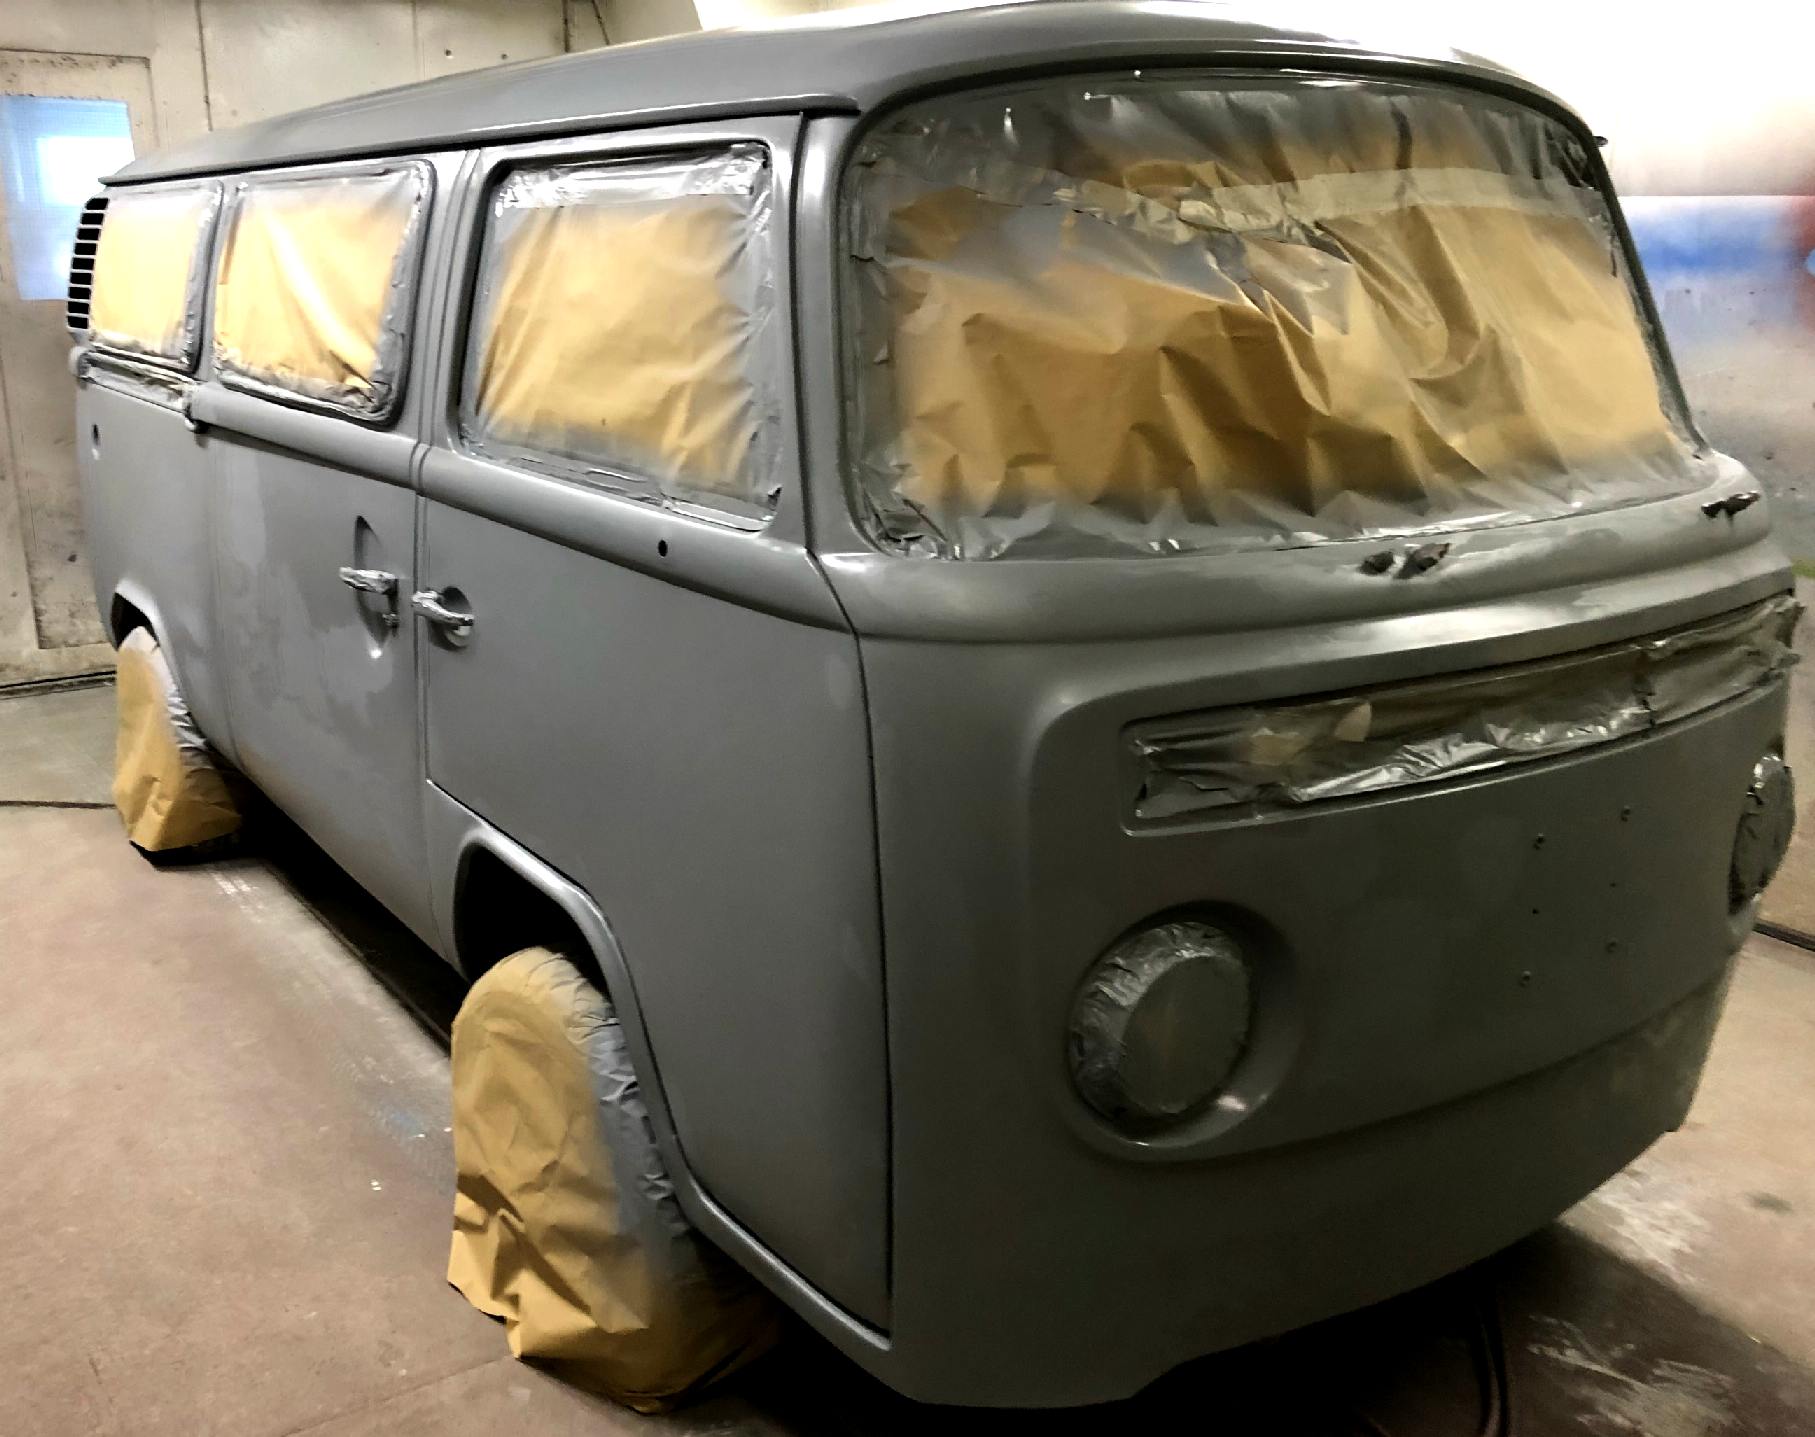 Volkswagen Kombi van in epoxy grey primer paint